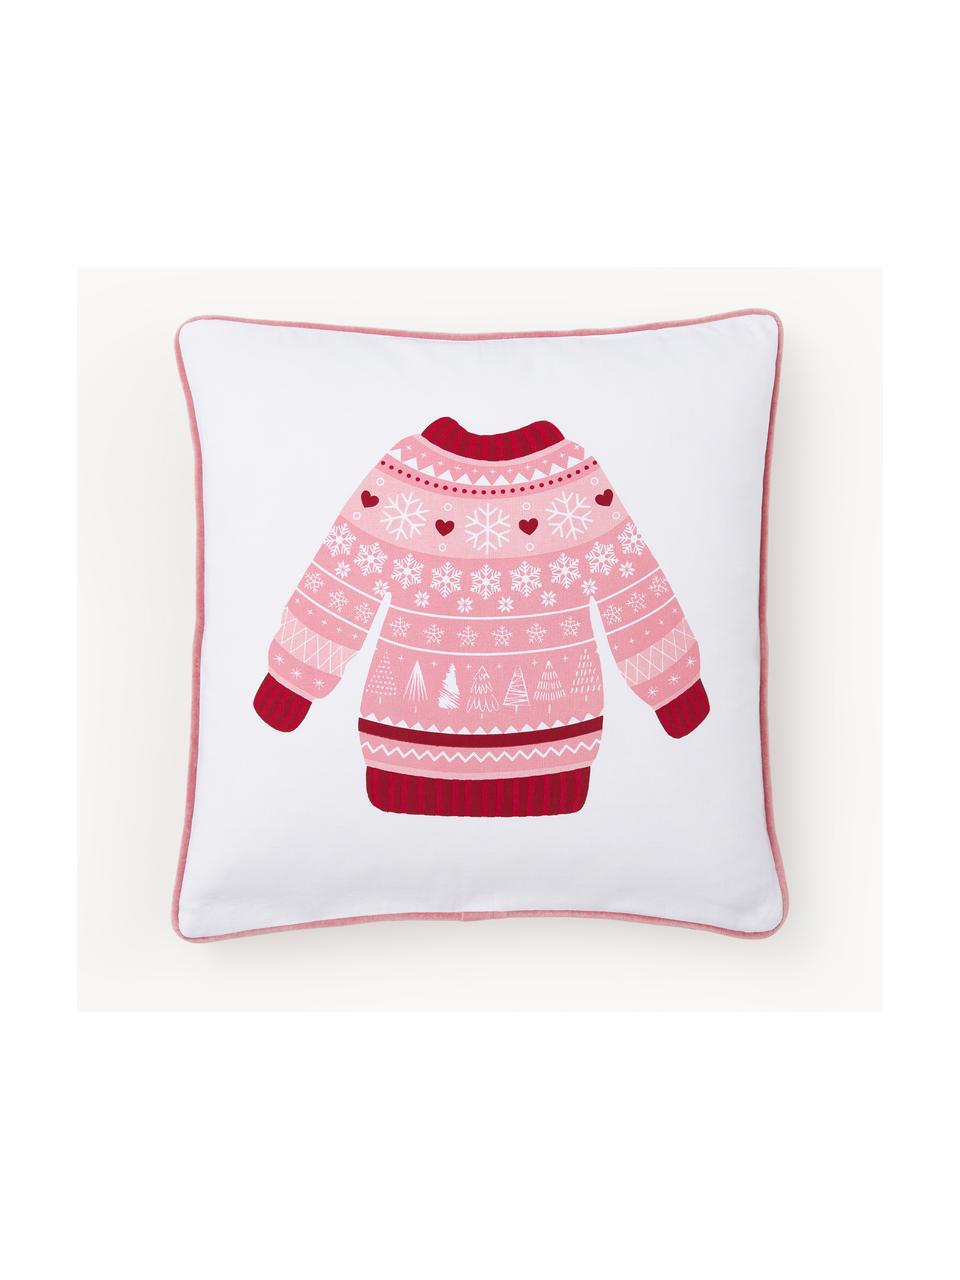 Copricuscino reversibile con motivo invernale Sweater, Rivestimento: 100% cotone, Bianco, rosso, rosa antico, Larg. 45 x Lung. 45 cm